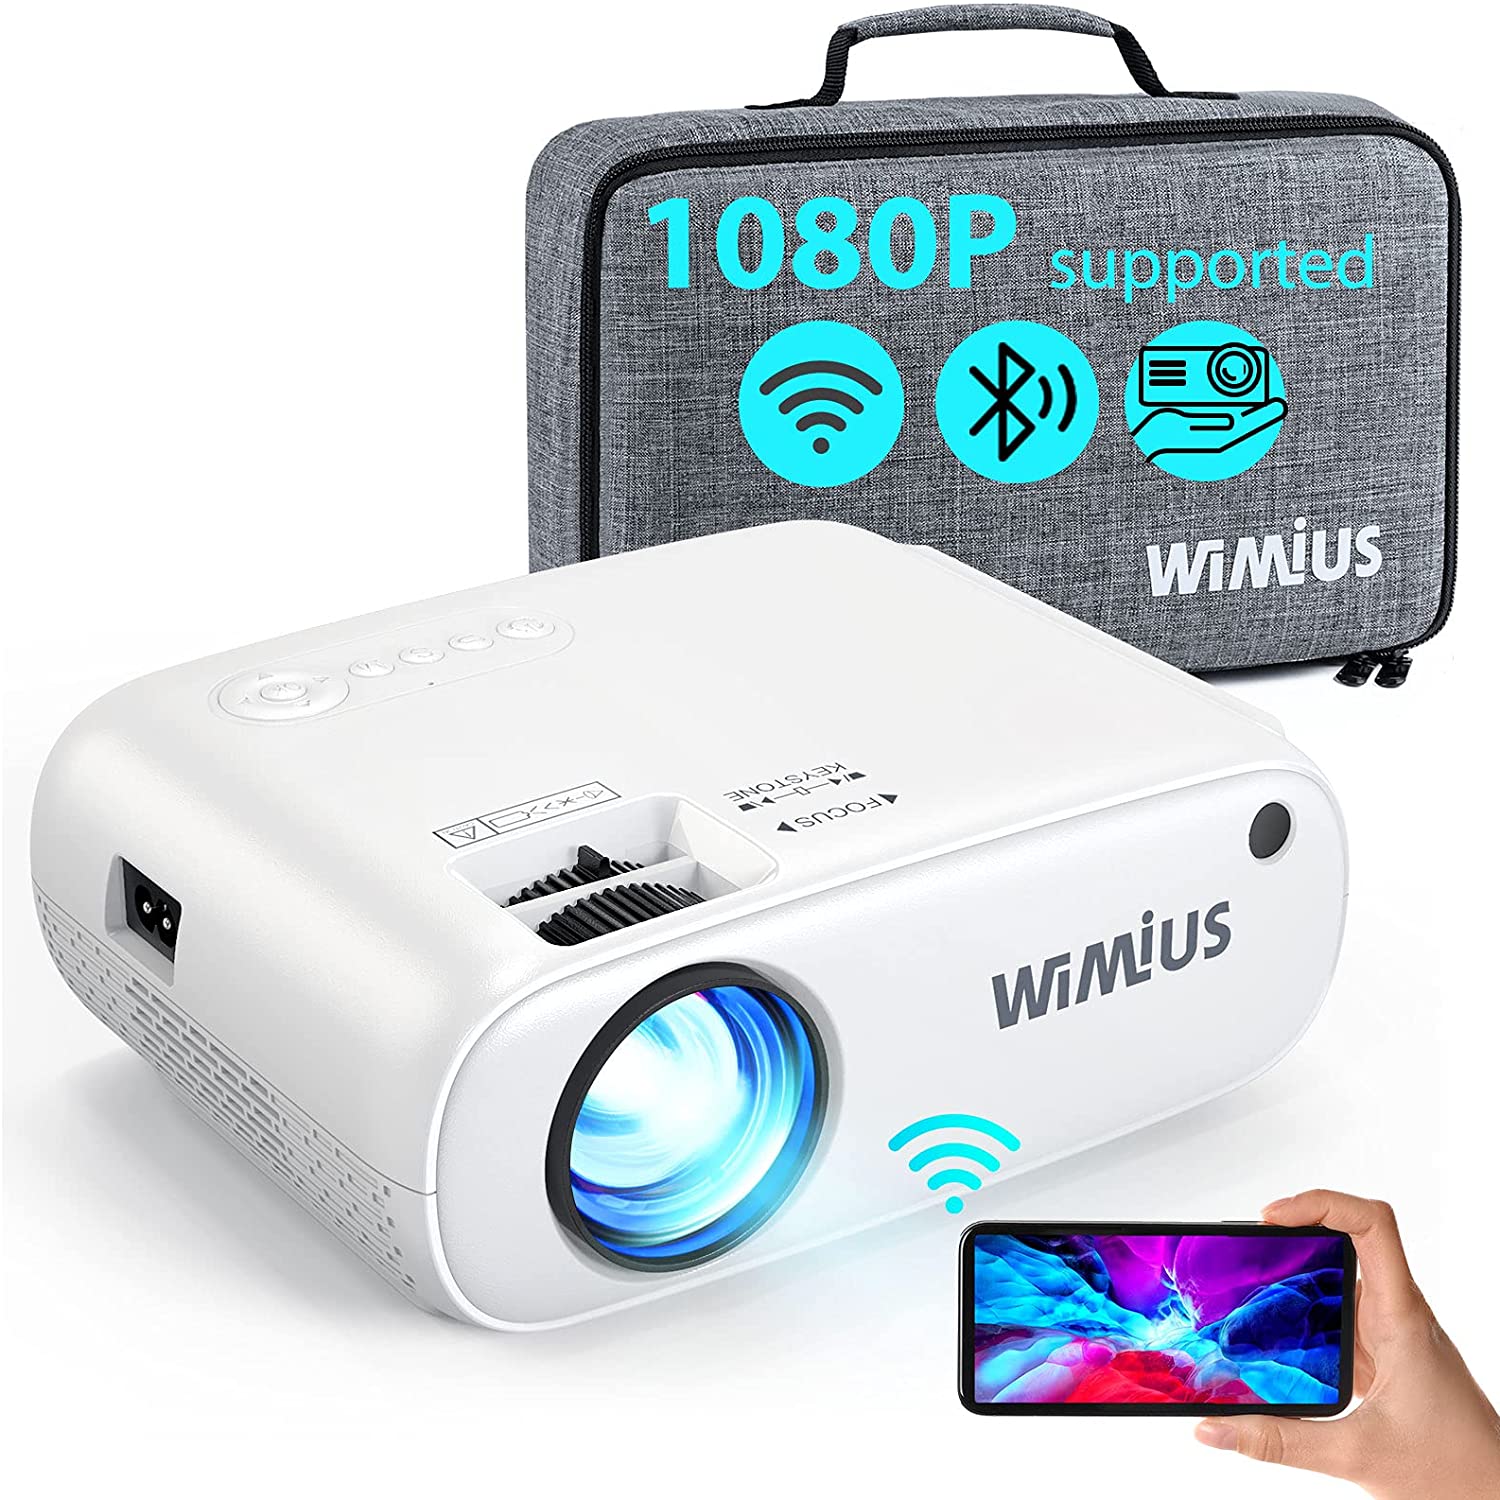 Wimius Official Shop ｜Wimius Projector Online